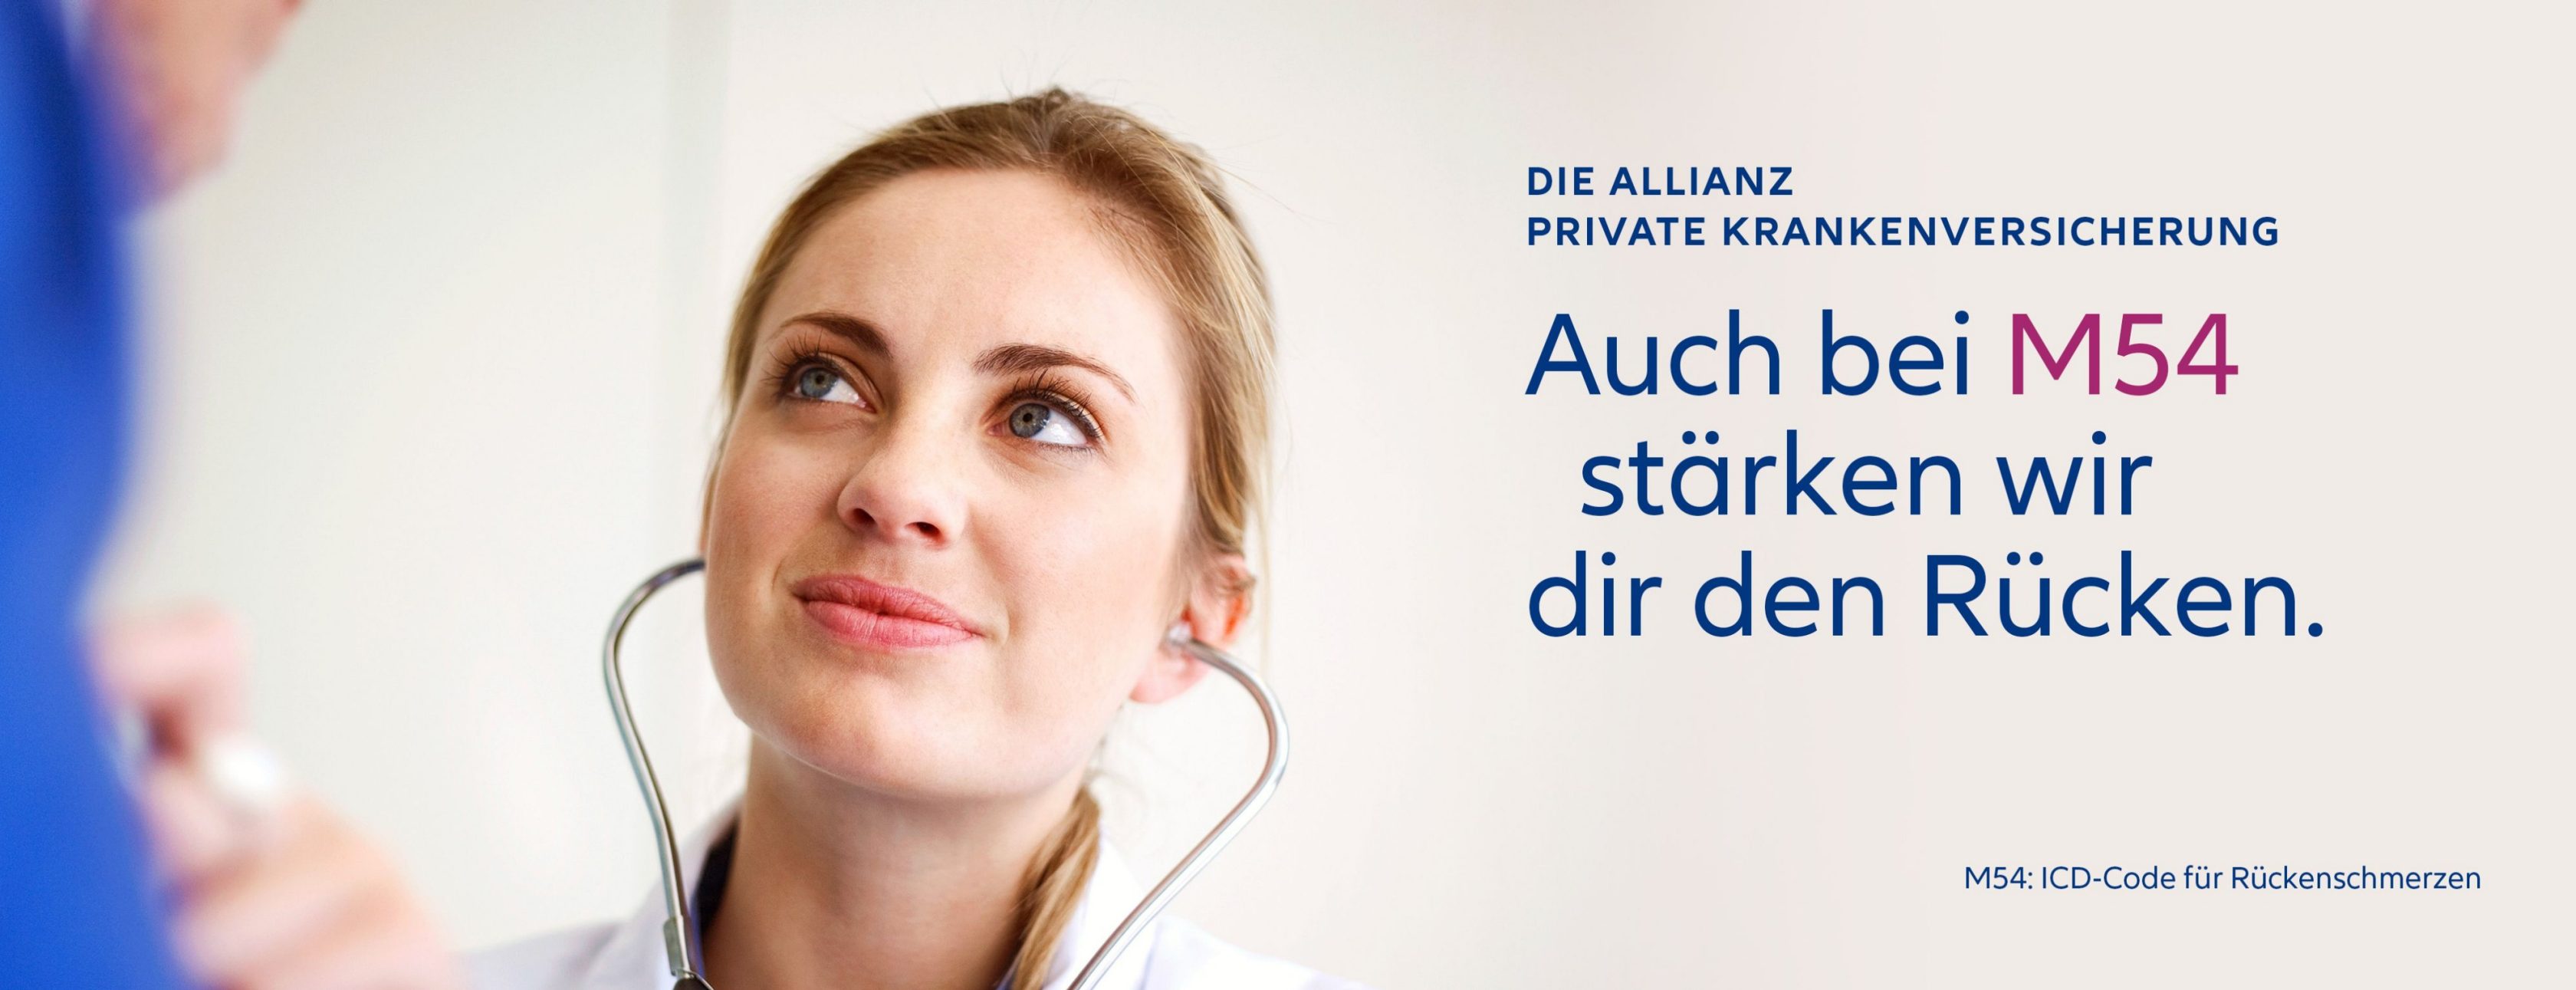 Allianz Versicherung Sandra Siam Mülheim an der Ruhr - Ärzte Private Krankenversicherung Arzt  PKV